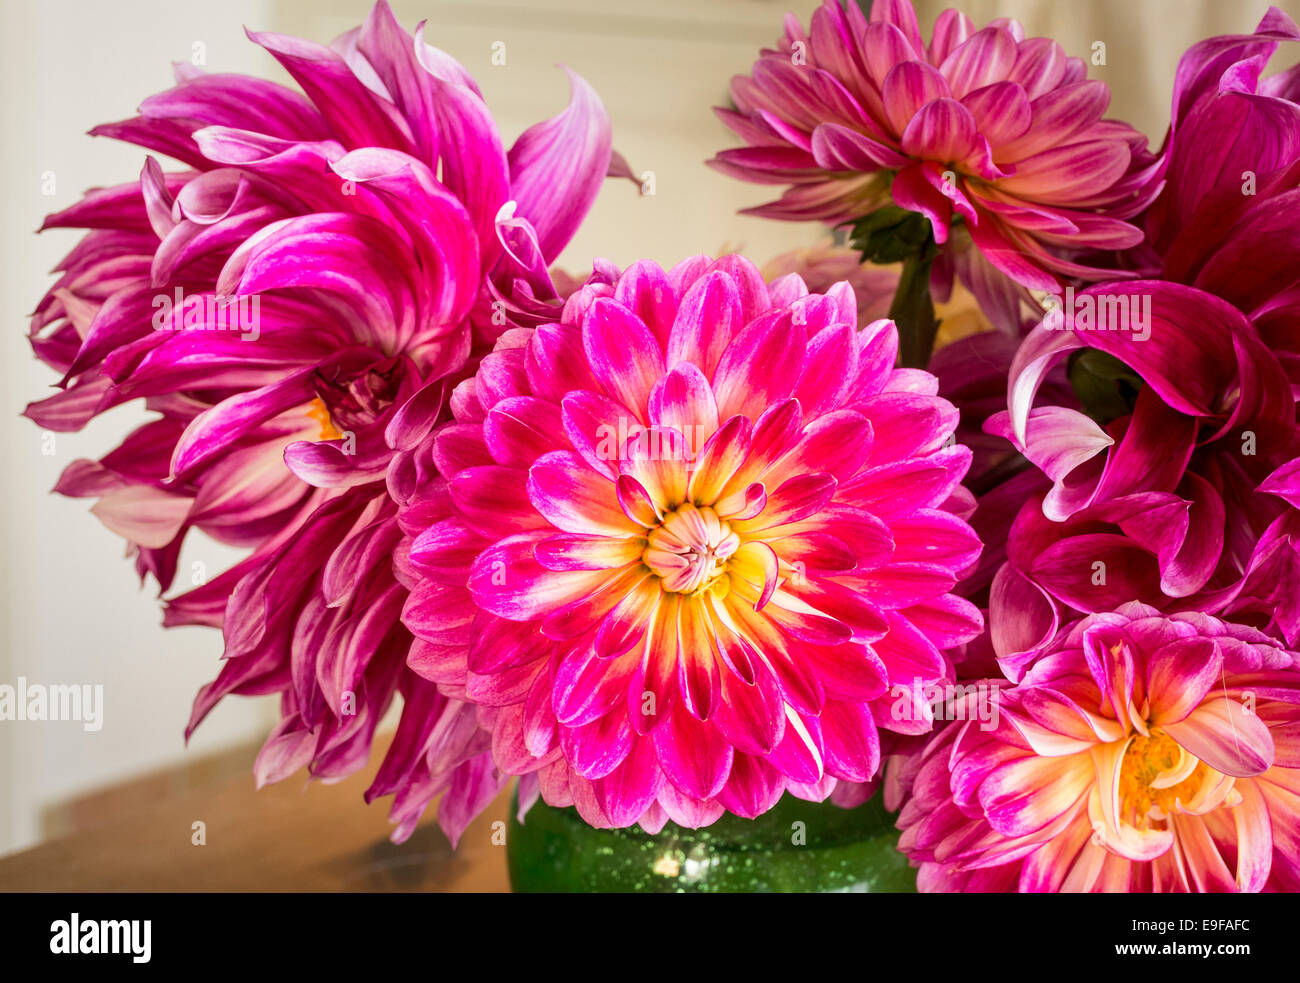 Dahlia fiori da giardino goduto in ambienti interni Foto Stock